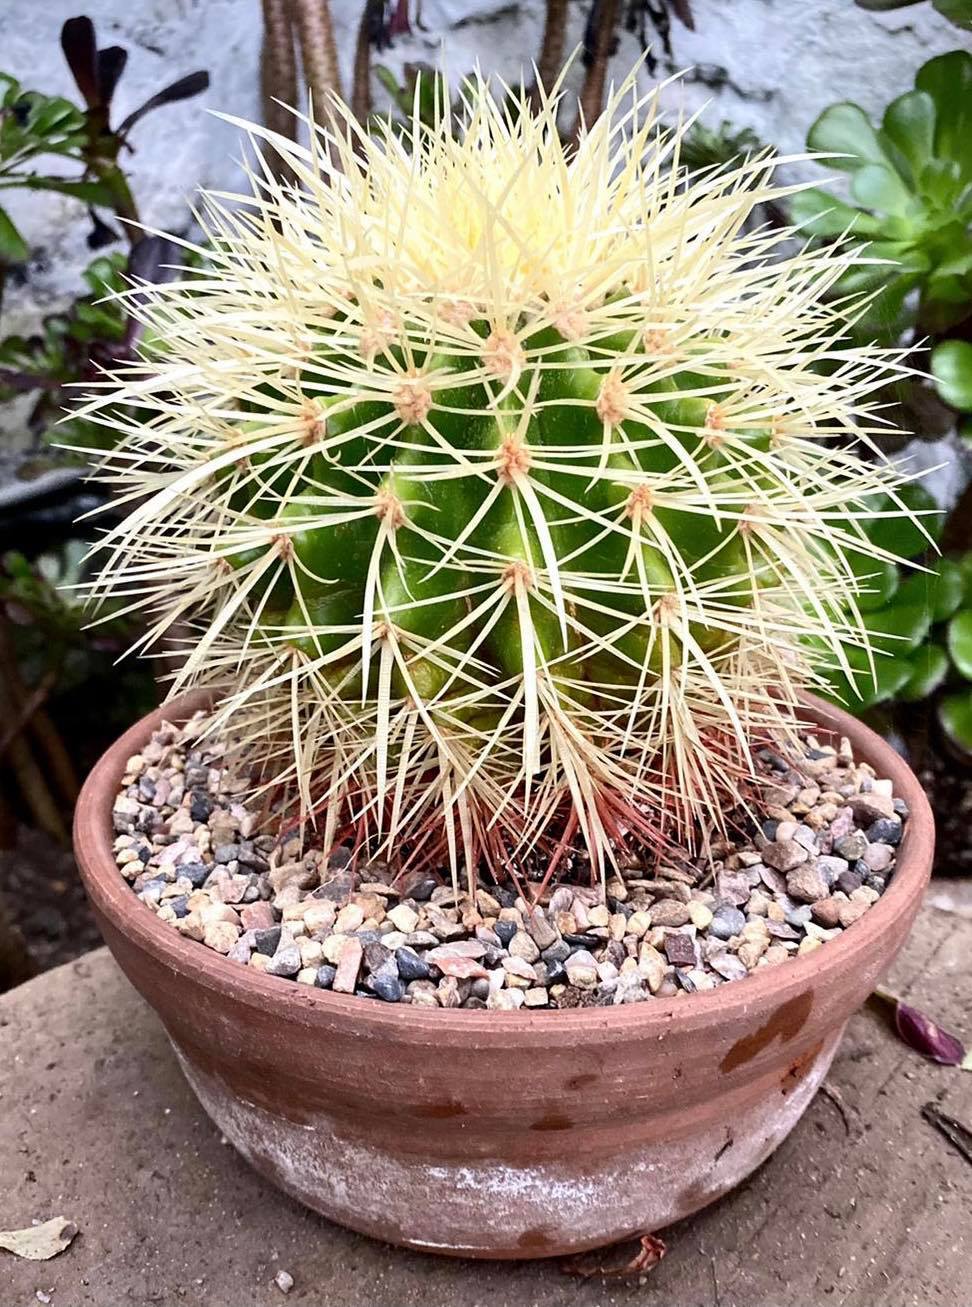 The Golden Barrel Cactus (Echinocactus grusonii) (30098606)